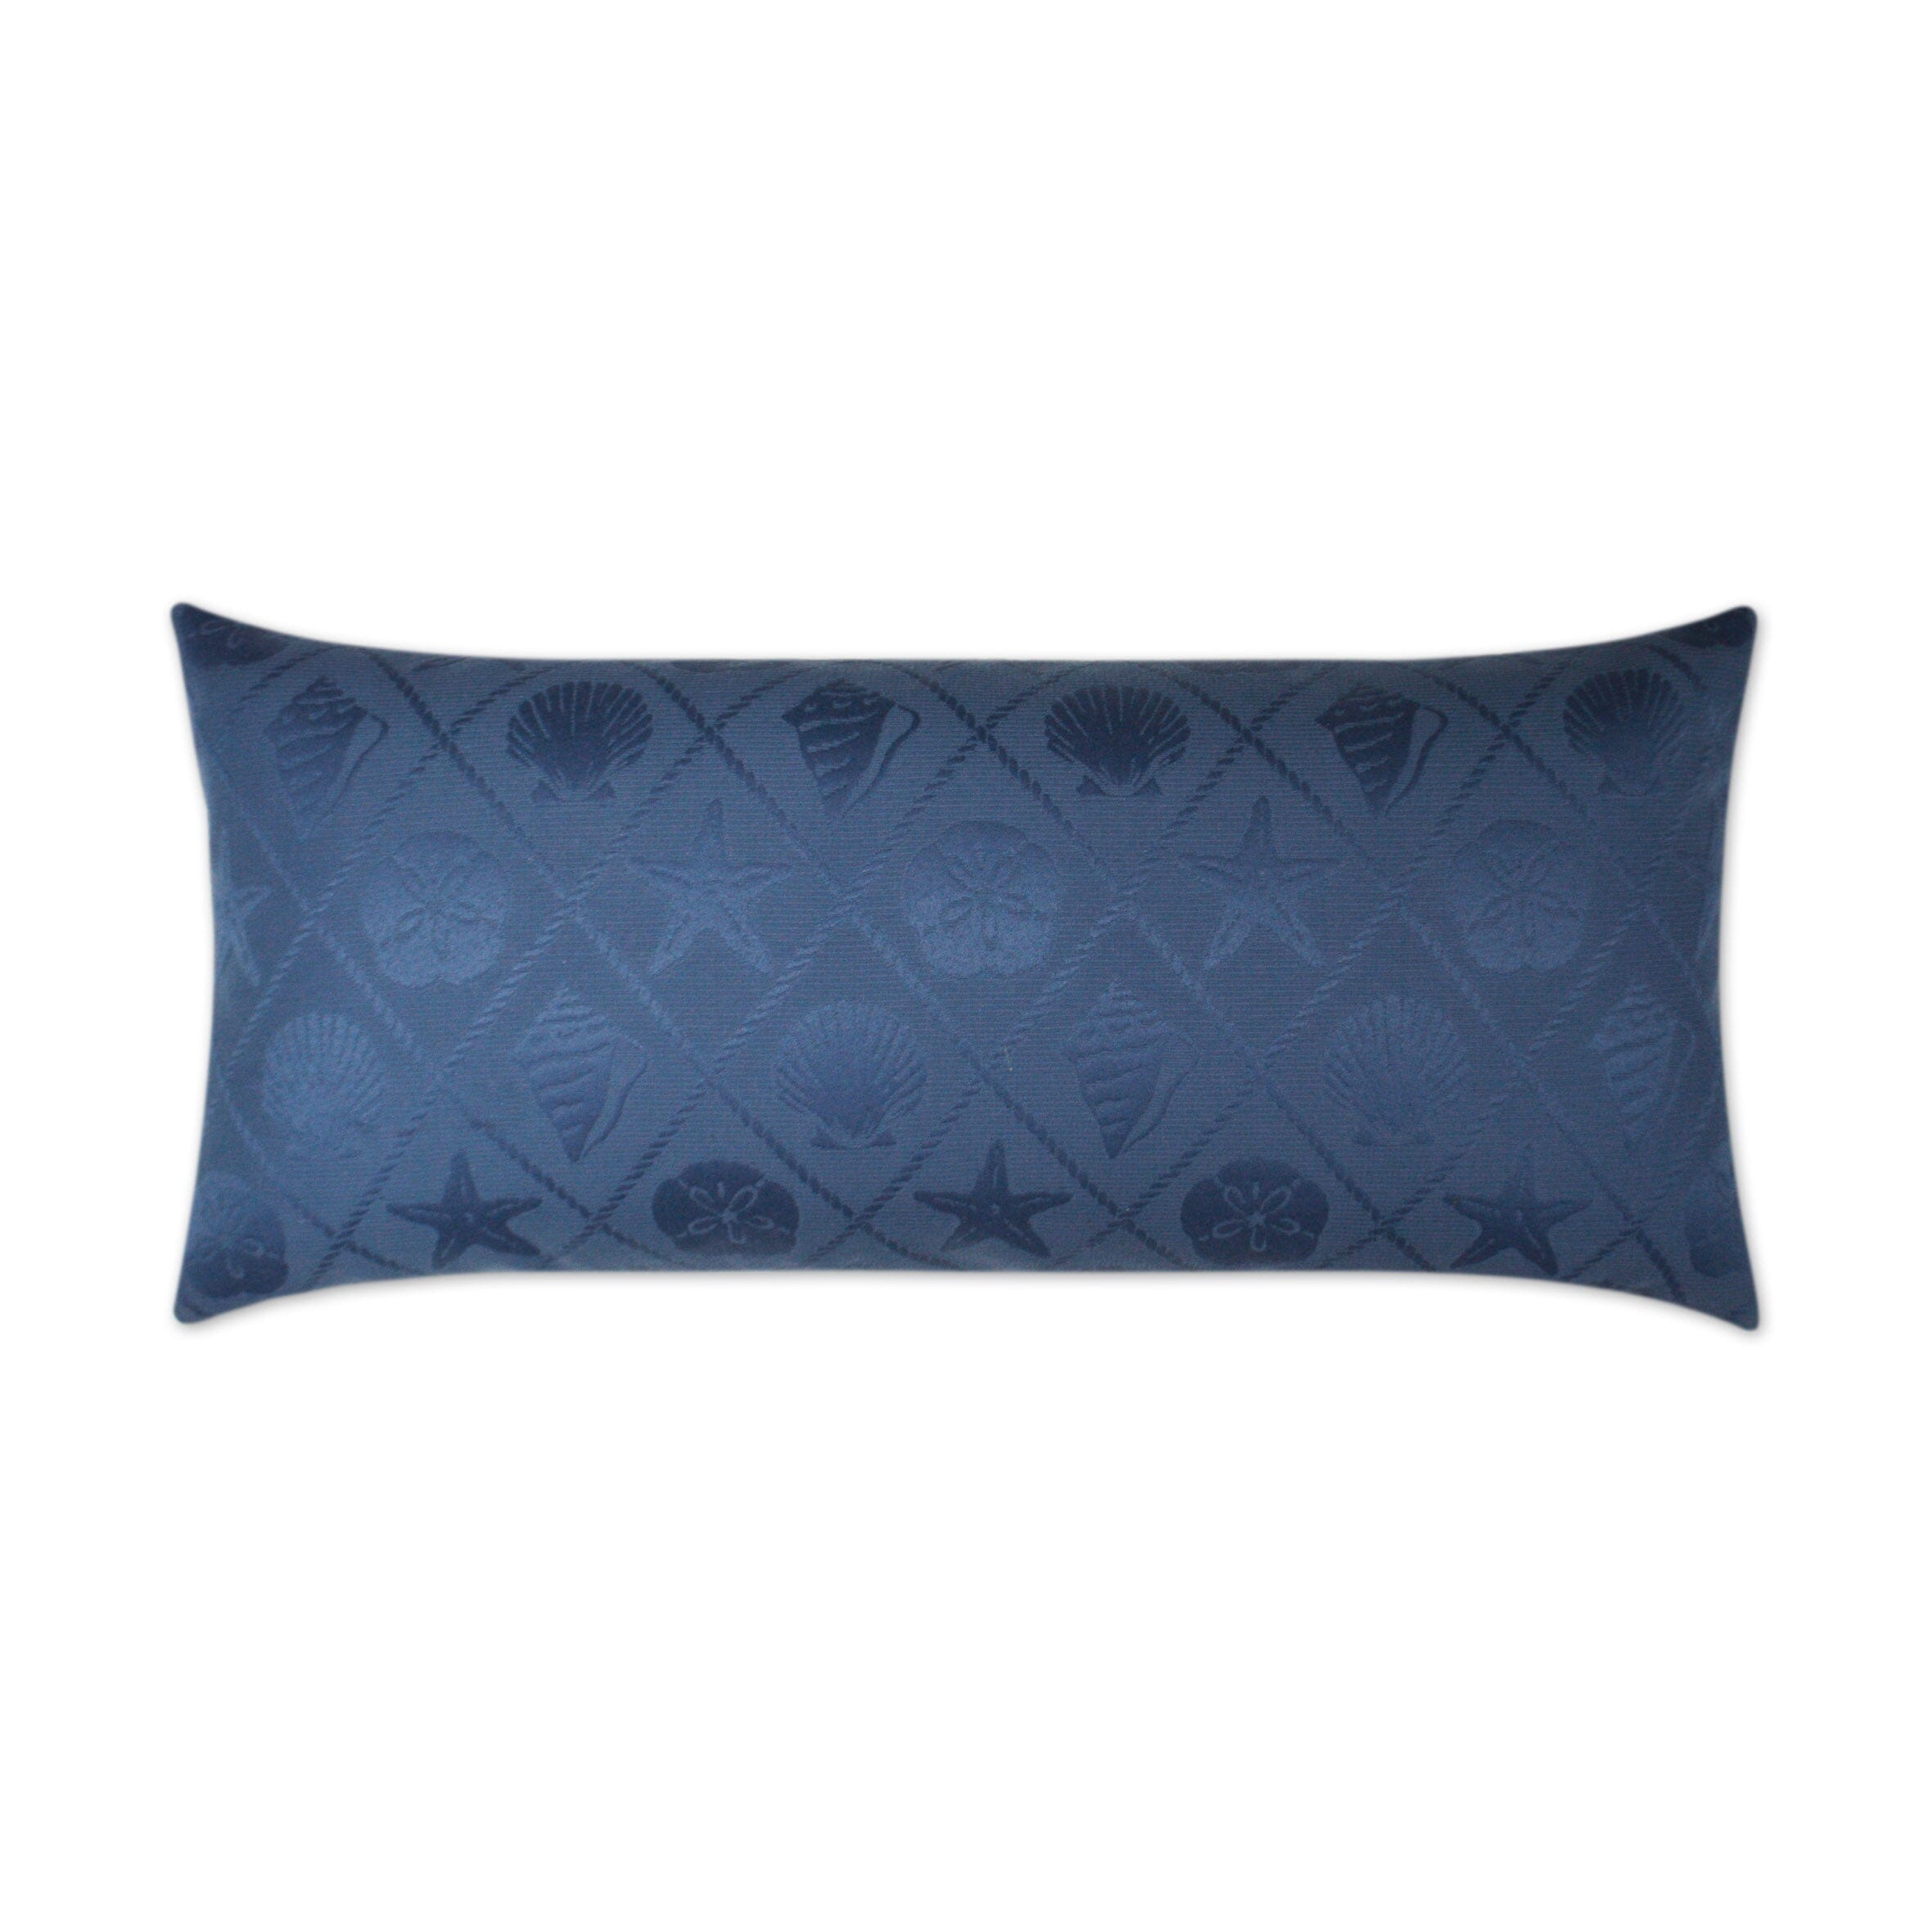 D.V. Kap 12" x 24" Outdoor Lumbar Pillow | Shell Trellis Pillows D.V Kap Outdoor